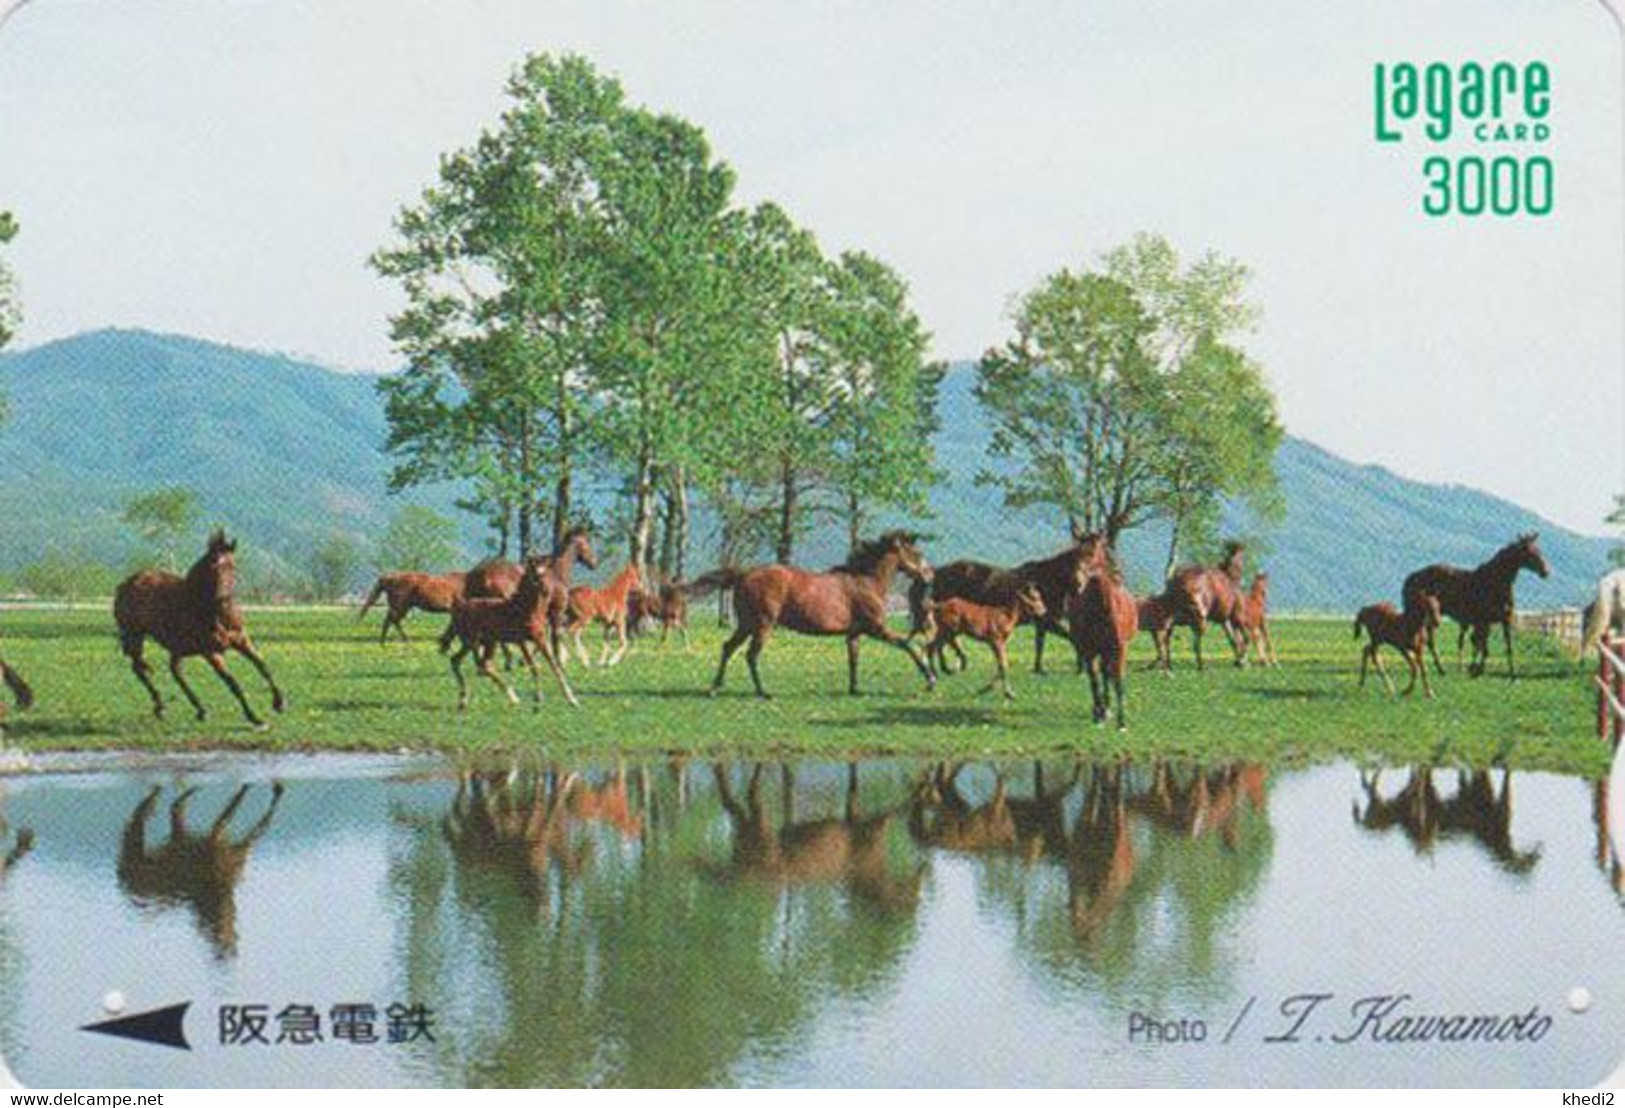 Carte Prépayée JAPON - ANIMAL - CHEVAL Chevaux - HORSE JAPAN Prepaid Kansai Lagare Ticket Card - 393 - Paarden